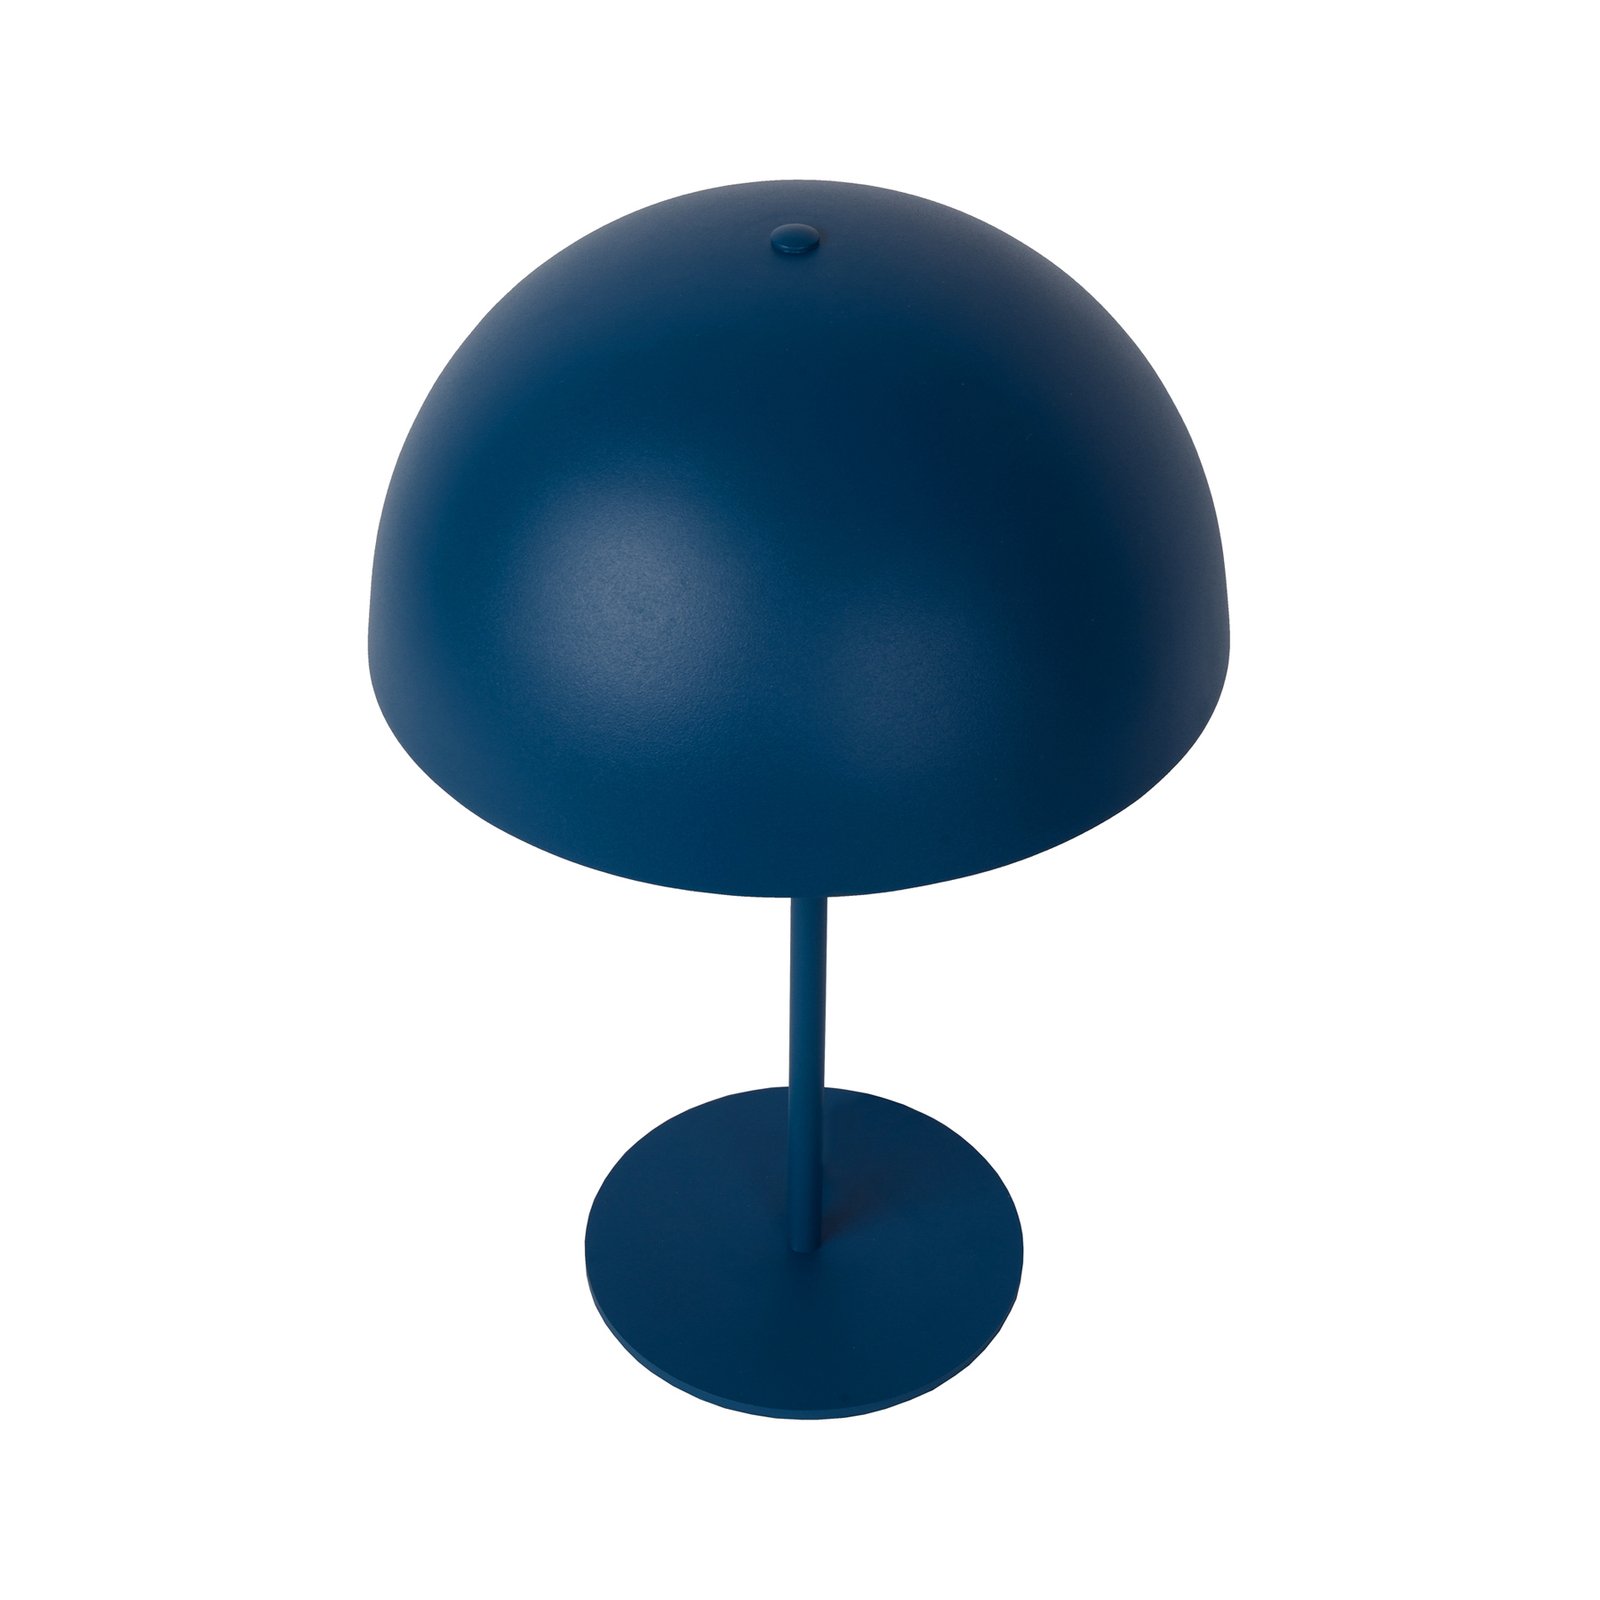 Siemon tērauda galda lampa, Ø 25 cm, zilā krāsā